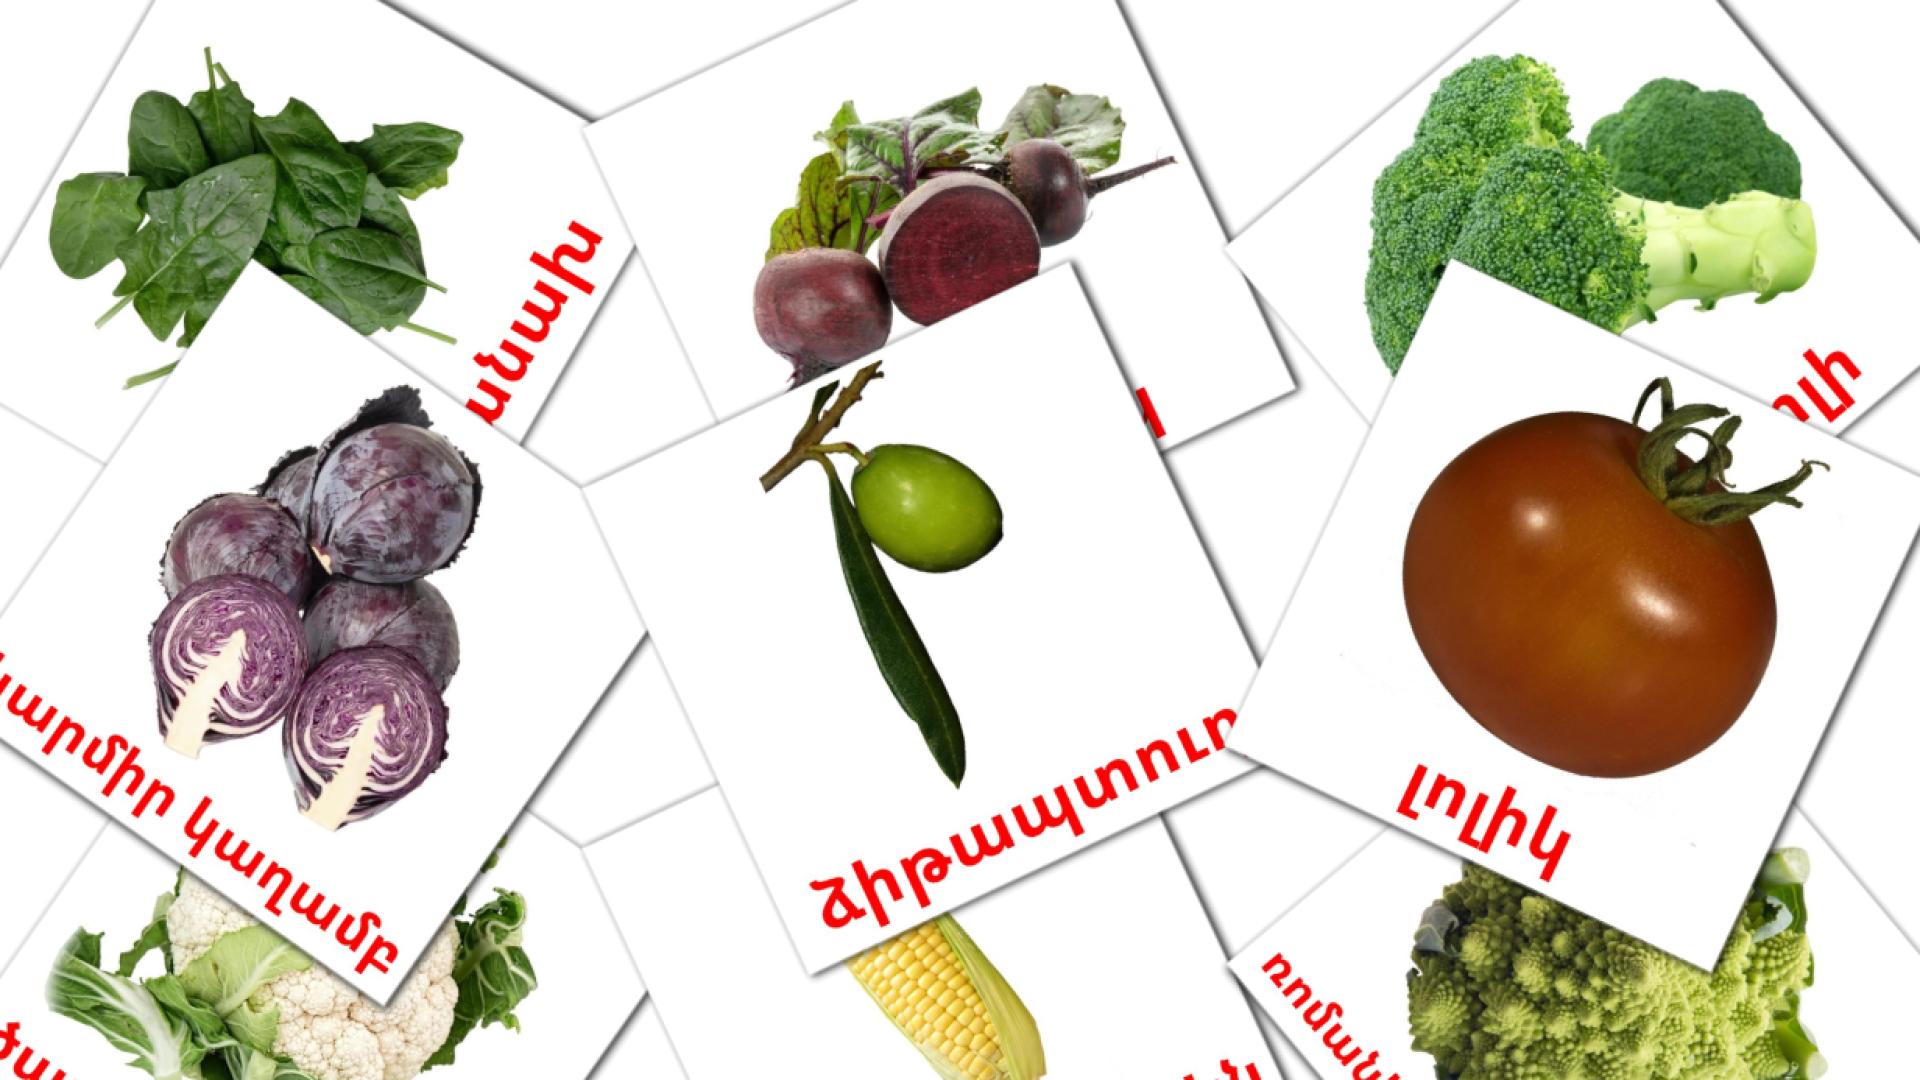 Gemüse - Armenisch Vokabelkarten